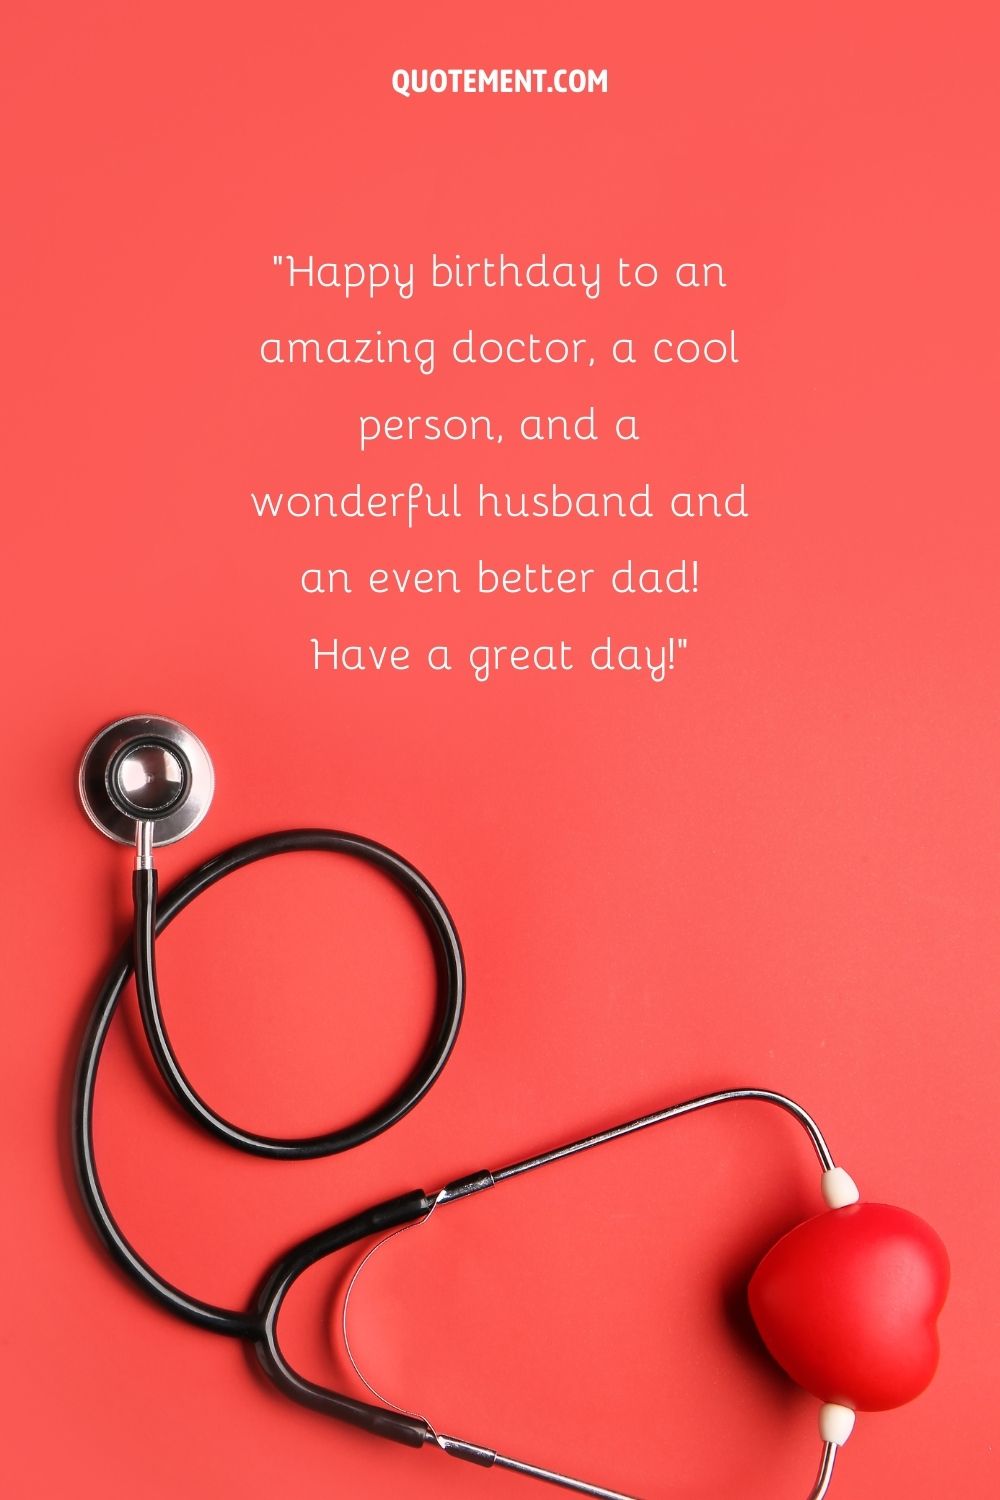 mejor deseo feliz cumpleaños marido representado por doctor cumpleaños deseos cita